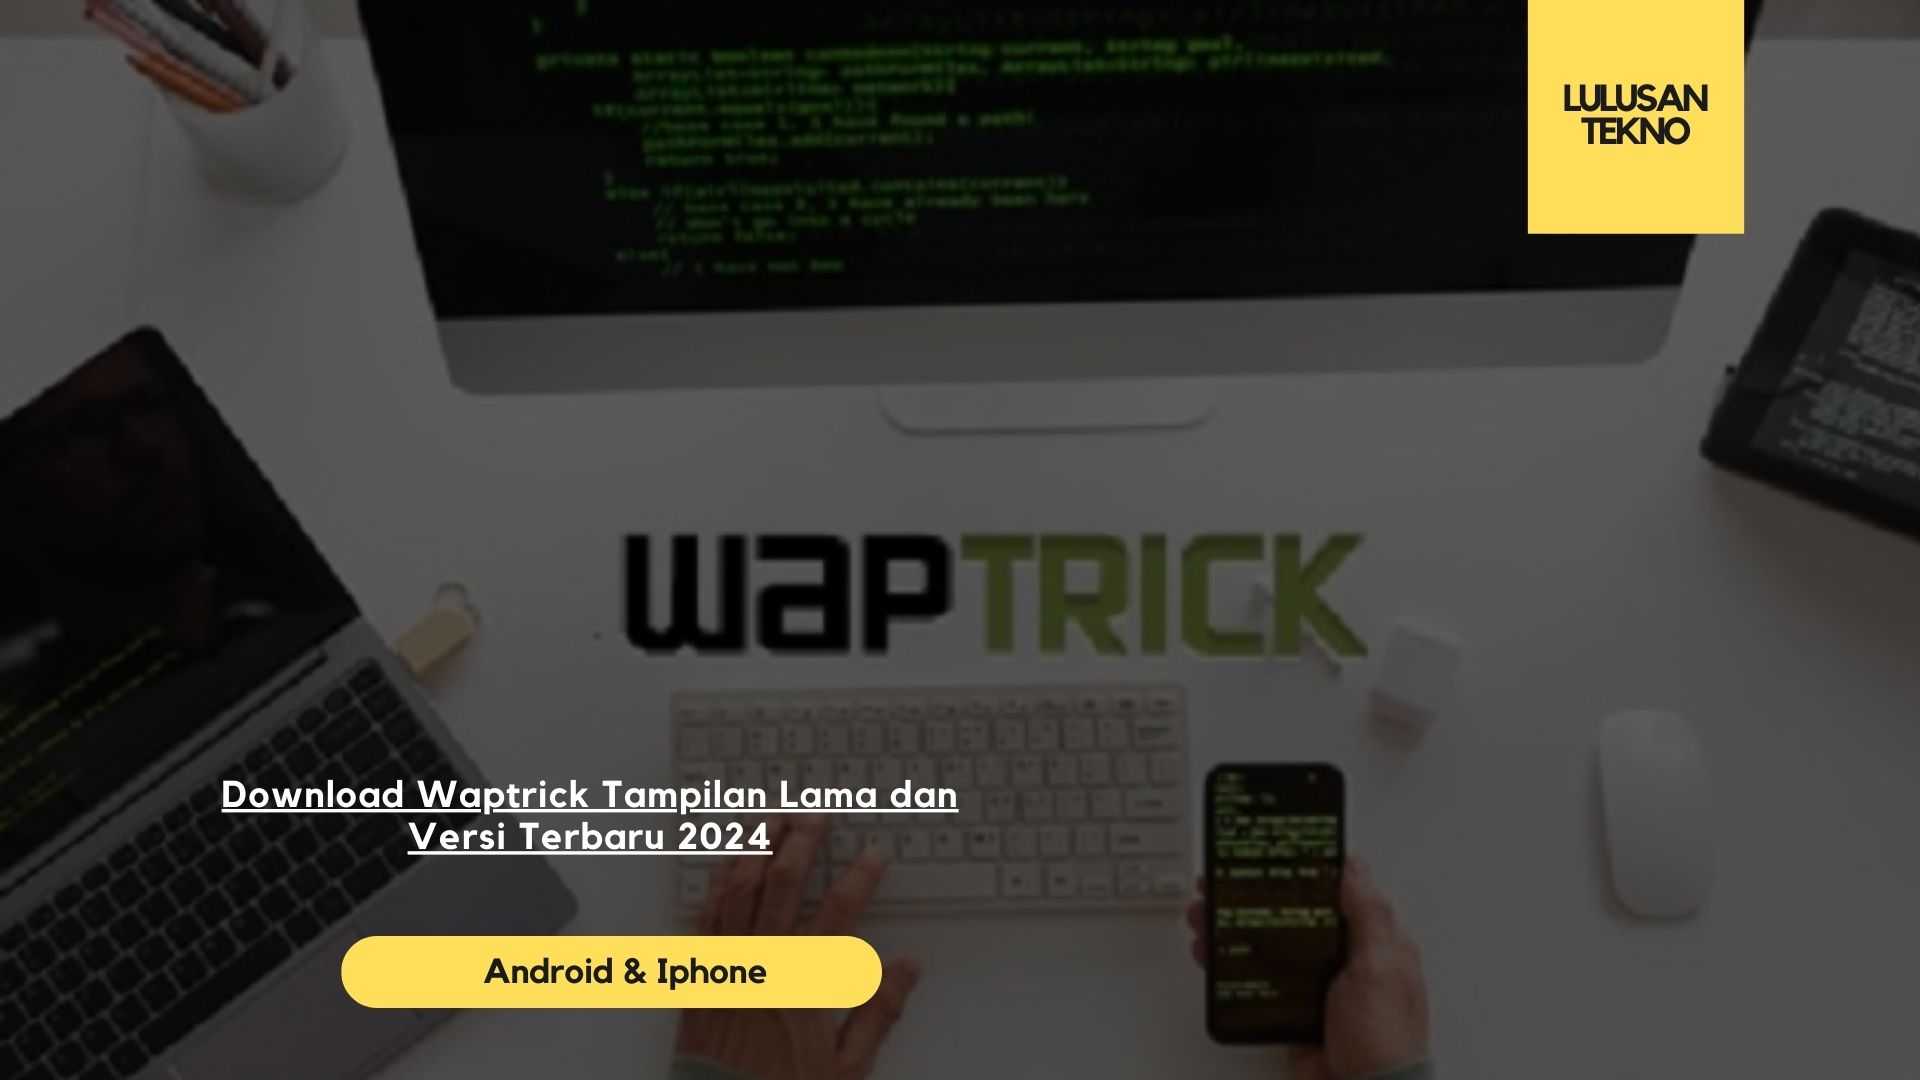 Download Waptrick Tampilan Lama dan Versi Terbaru 2024